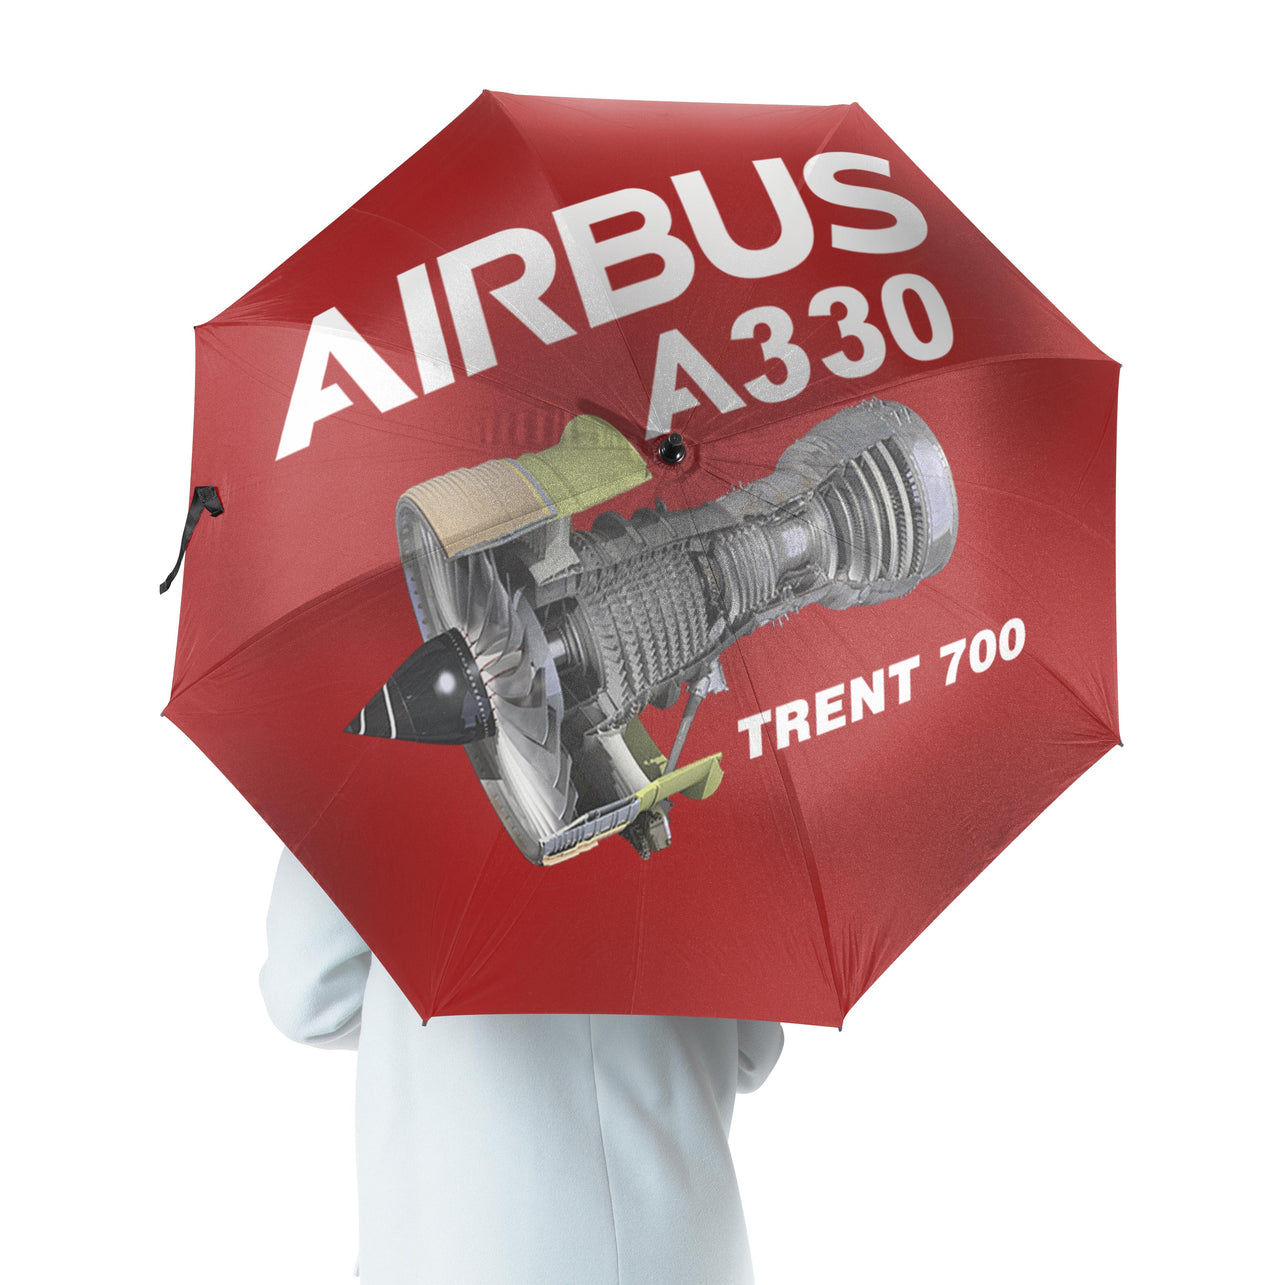 Airbus A330 & Trent 700 Engine Designed Umbrella